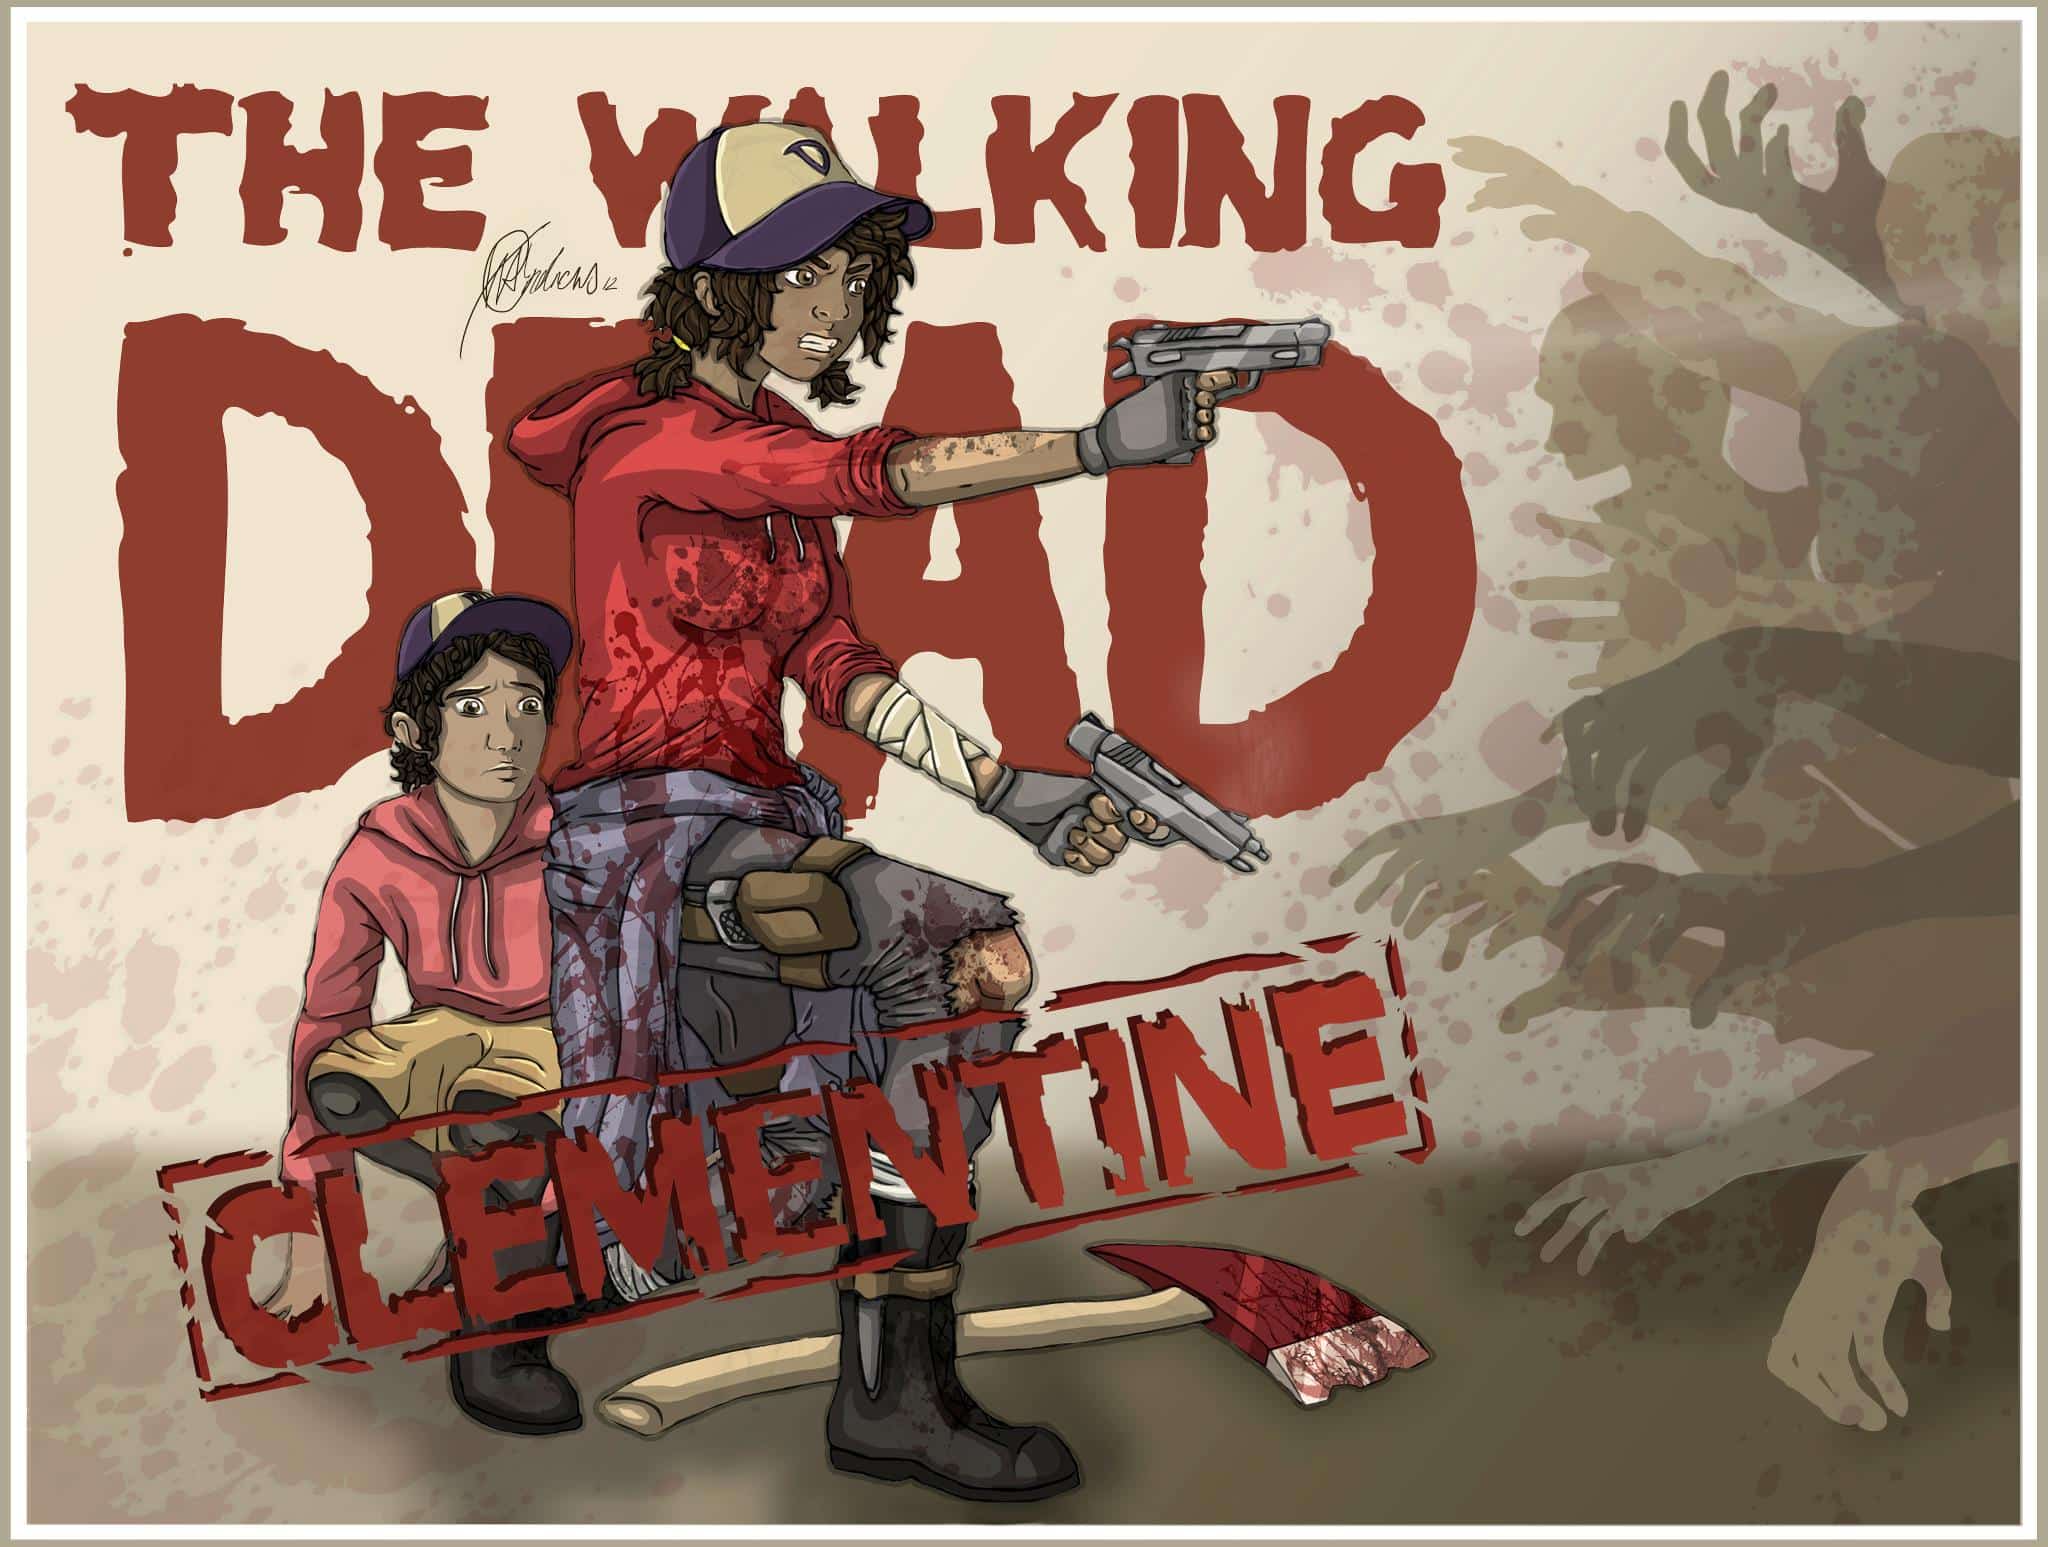 The Walking Dead Game: Season 3 Release Date